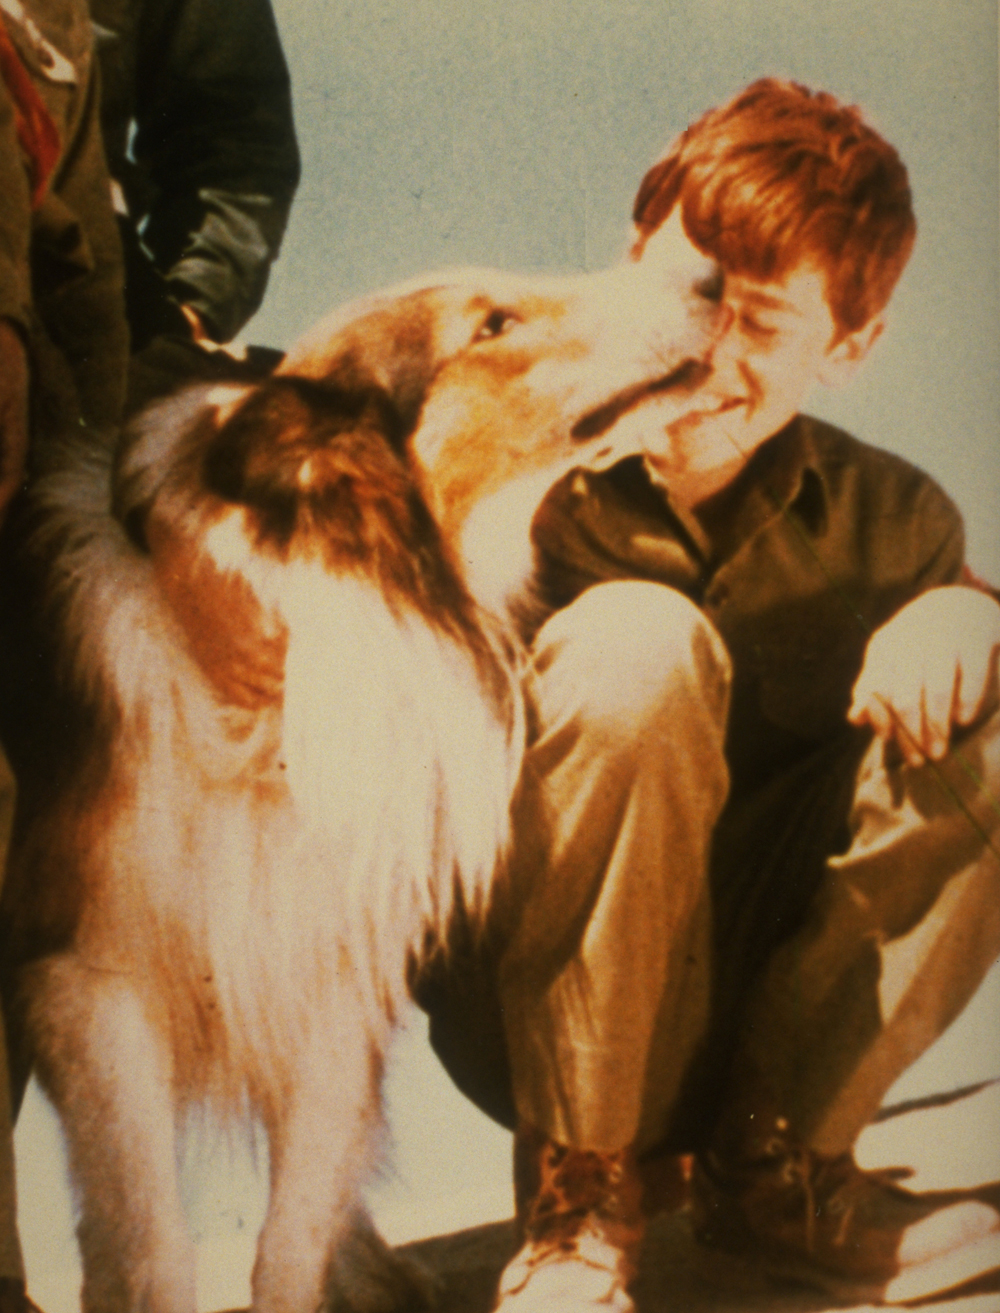 Craig saved by Lassie on TV series